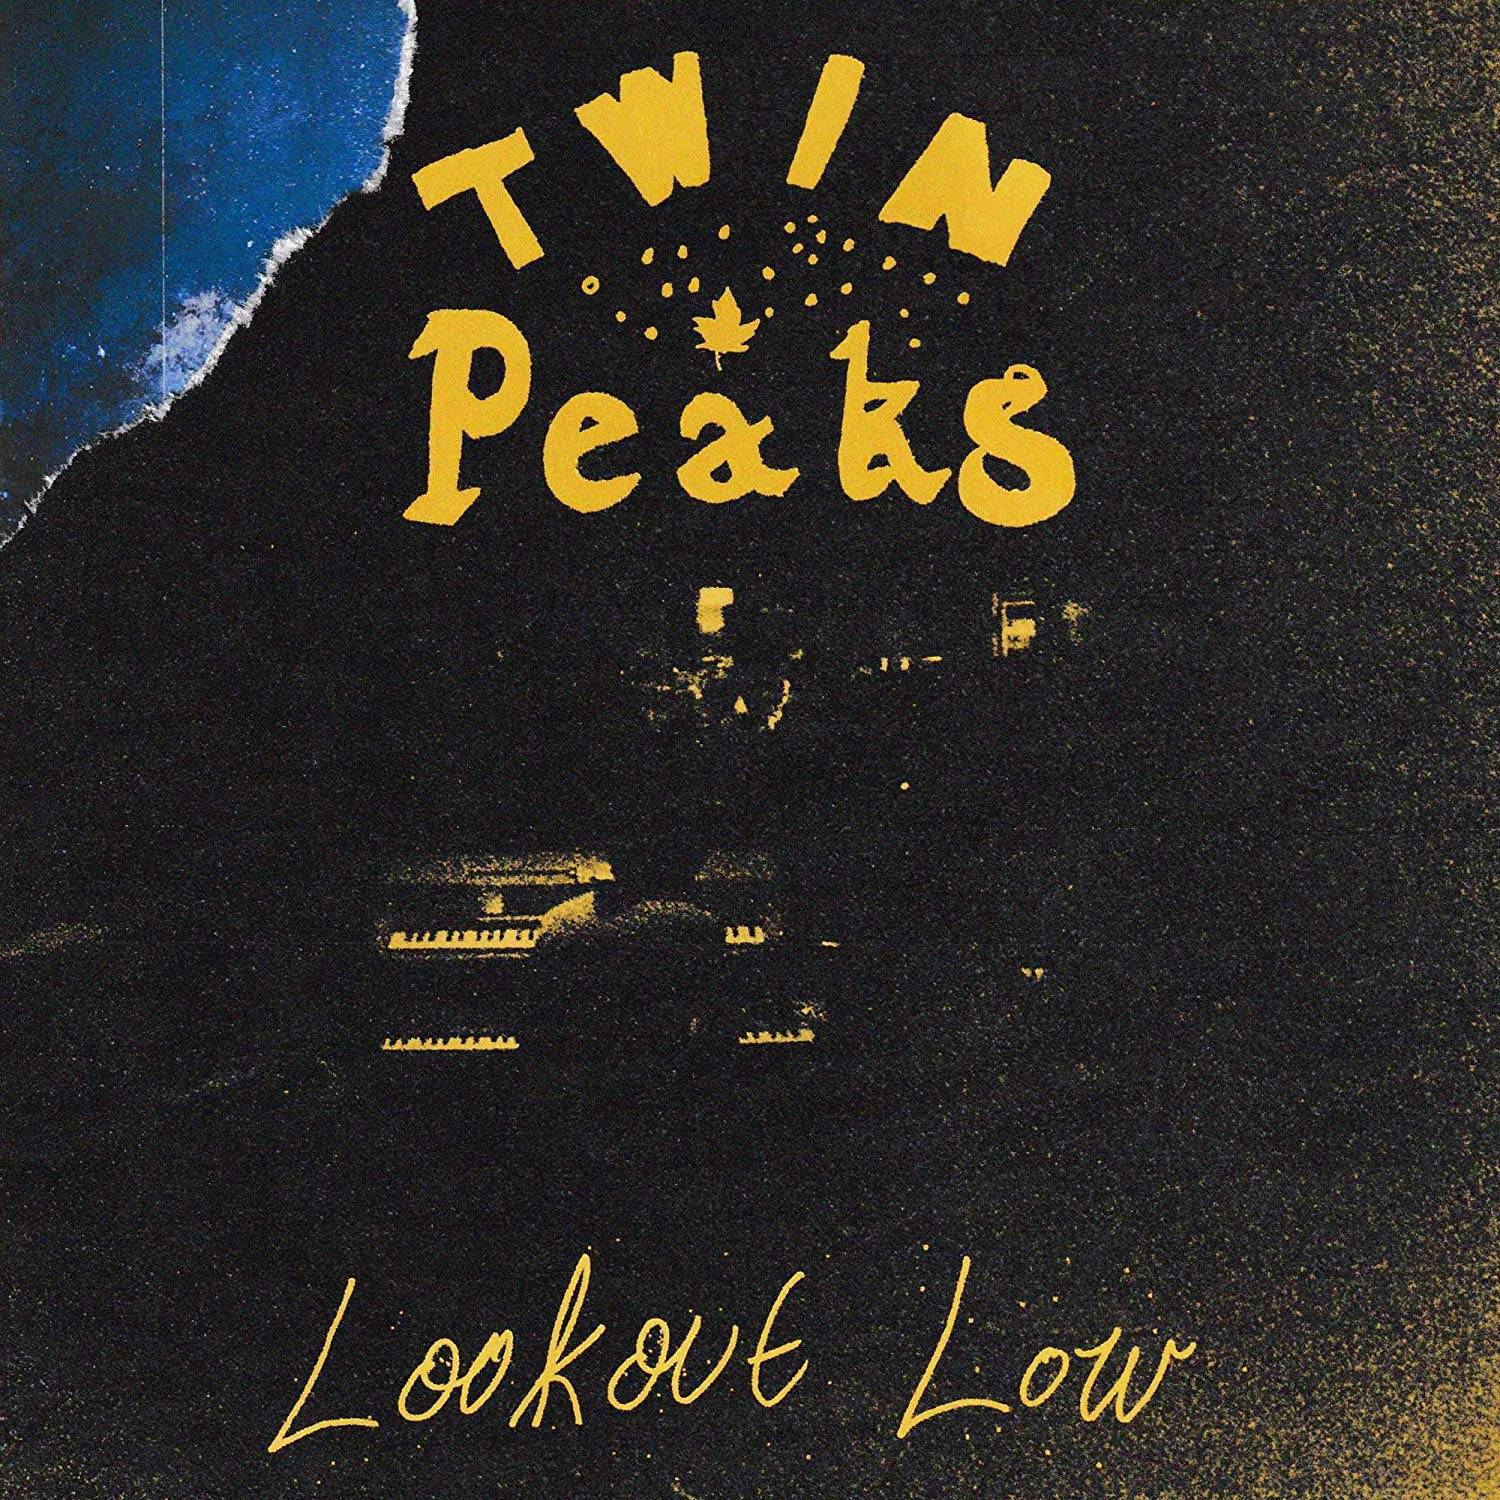 Vinile Twin Peaks - Lookout Low NUOVO SIGILLATO, EDIZIONE DEL 31/08/2019 SUBITO DISPONIBILE